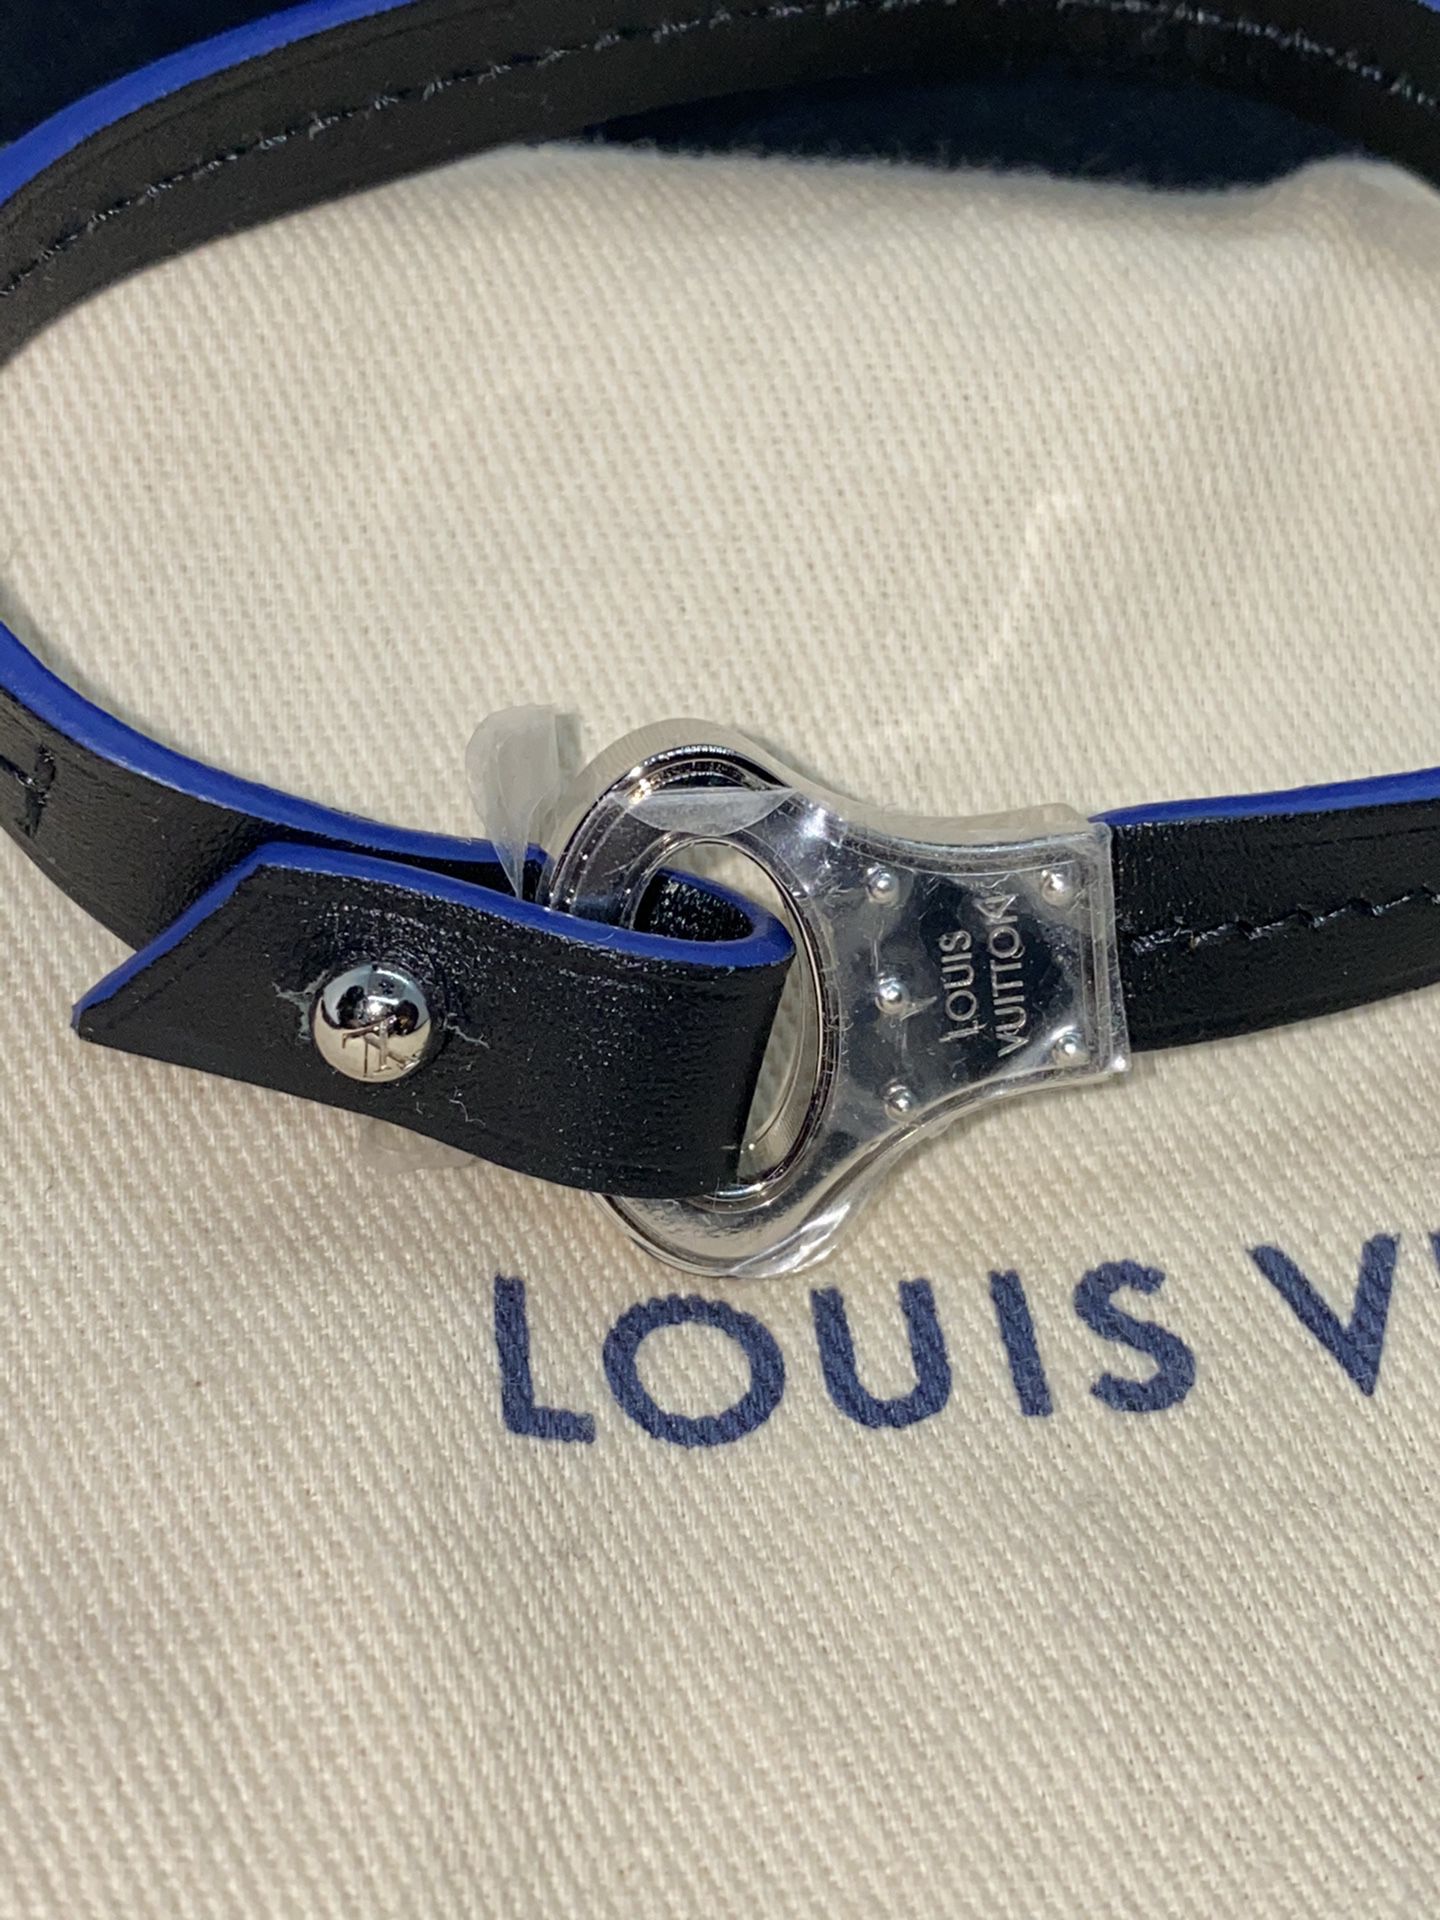 Louis Vuitton men's Bracelet for Sale in Henderson, NV - OfferUp